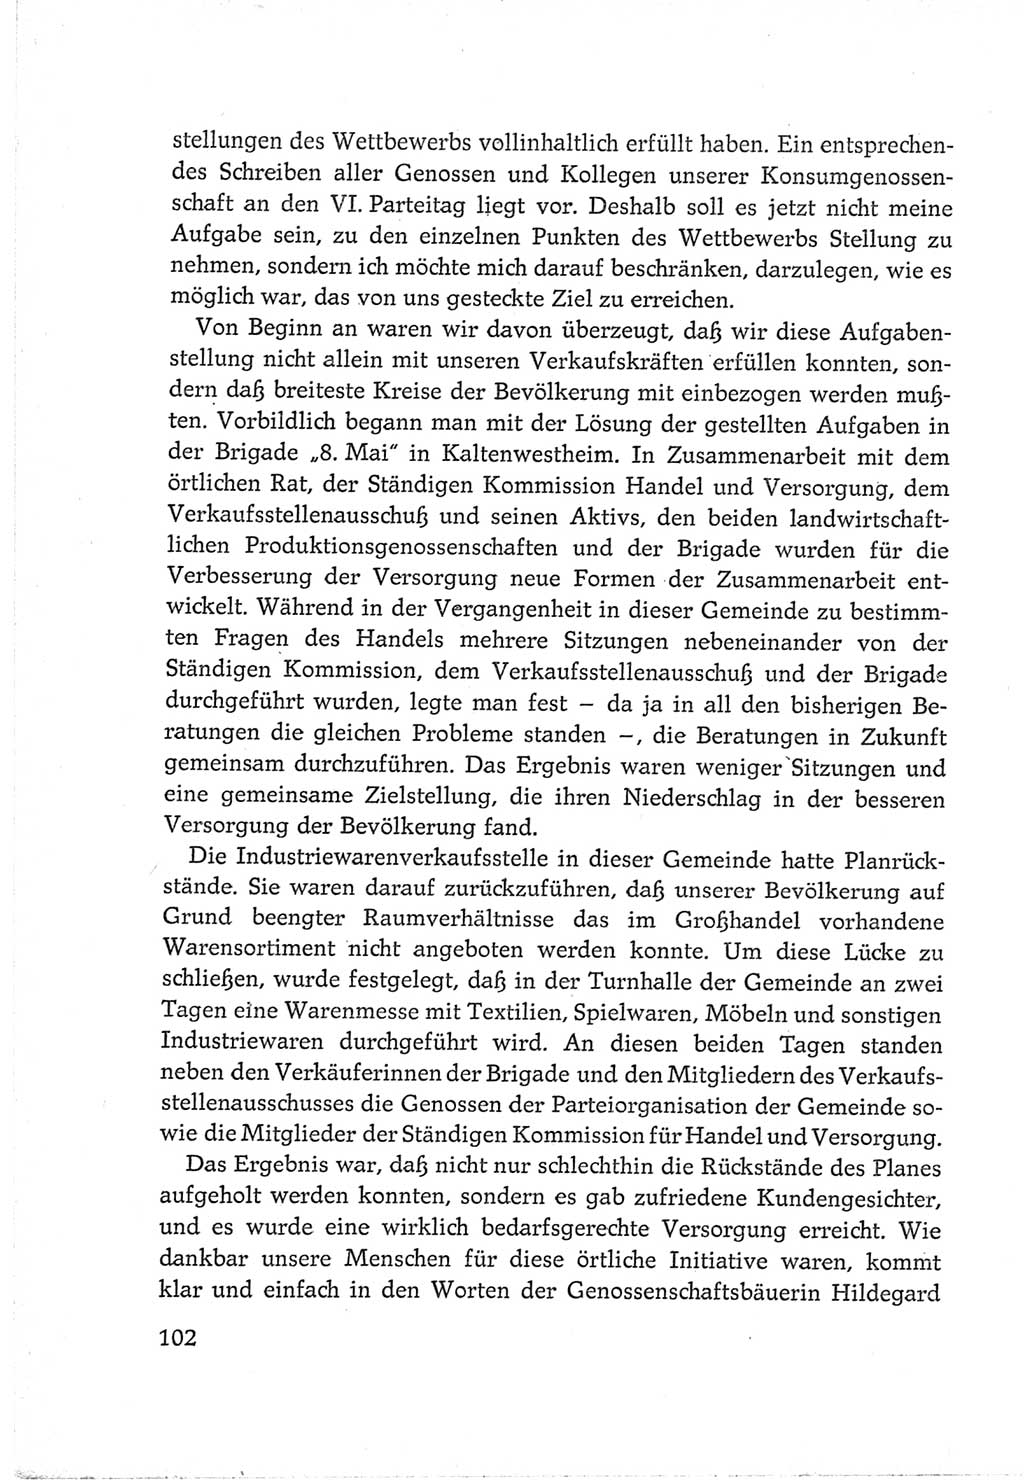 Protokoll der Verhandlungen des Ⅵ. Parteitages der Sozialistischen Einheitspartei Deutschlands (SED) [Deutsche Demokratische Republik (DDR)] 1963, Band Ⅲ, Seite 102 (Prot. Verh. Ⅵ. PT SED DDR 1963, Bd. Ⅲ, S. 102)